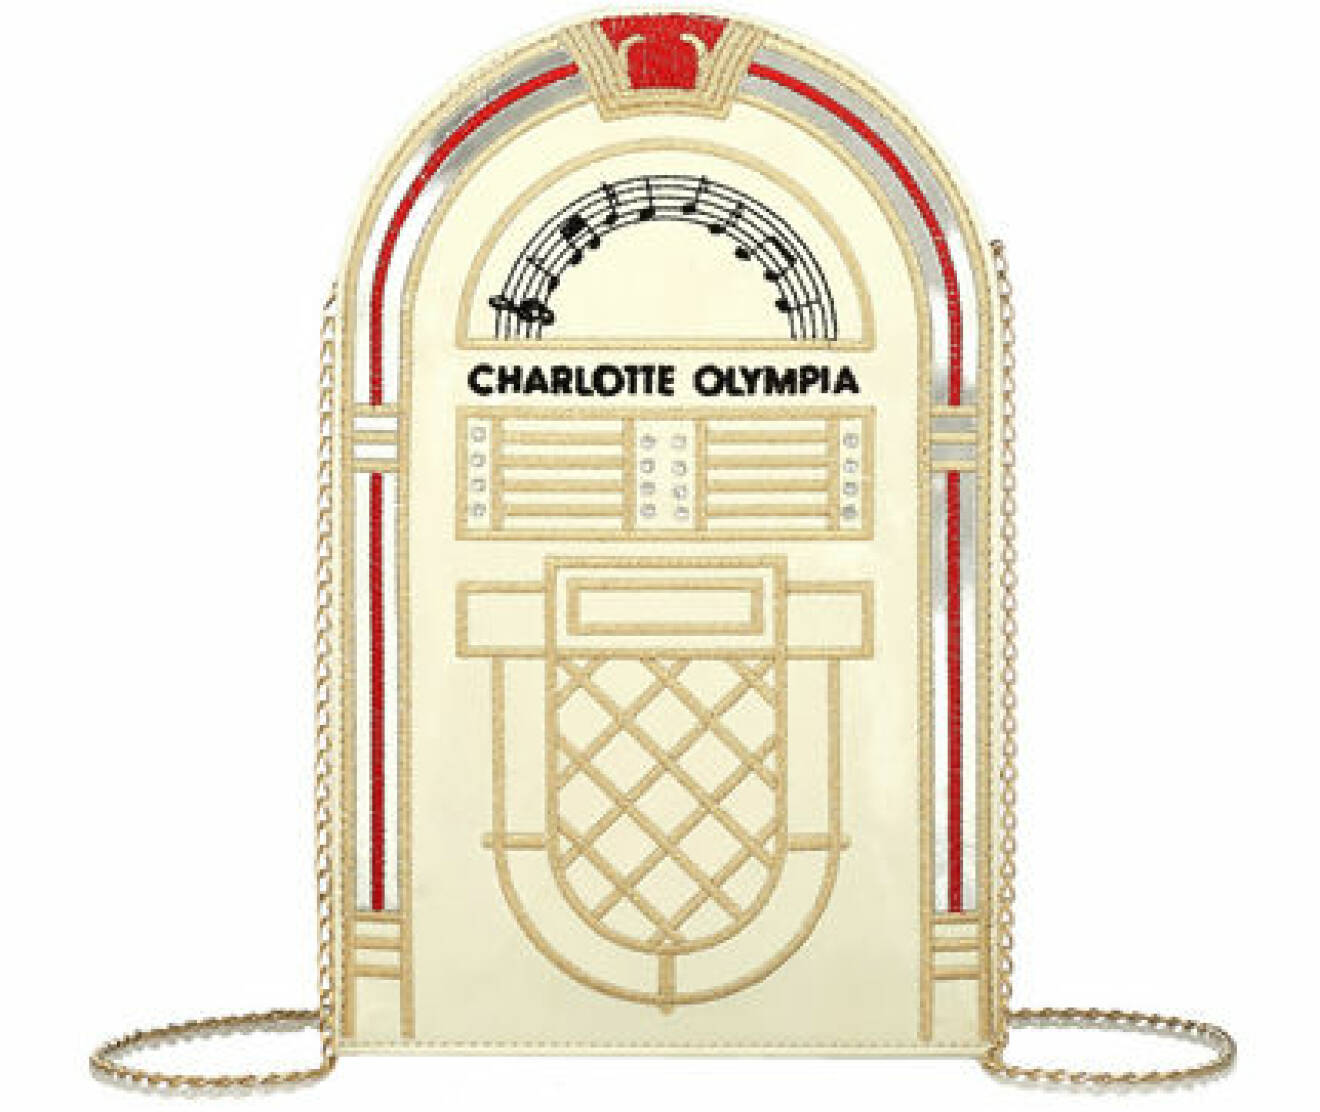 Väska, 3810 kr, Chalotte Olympia Net-a-porter.com